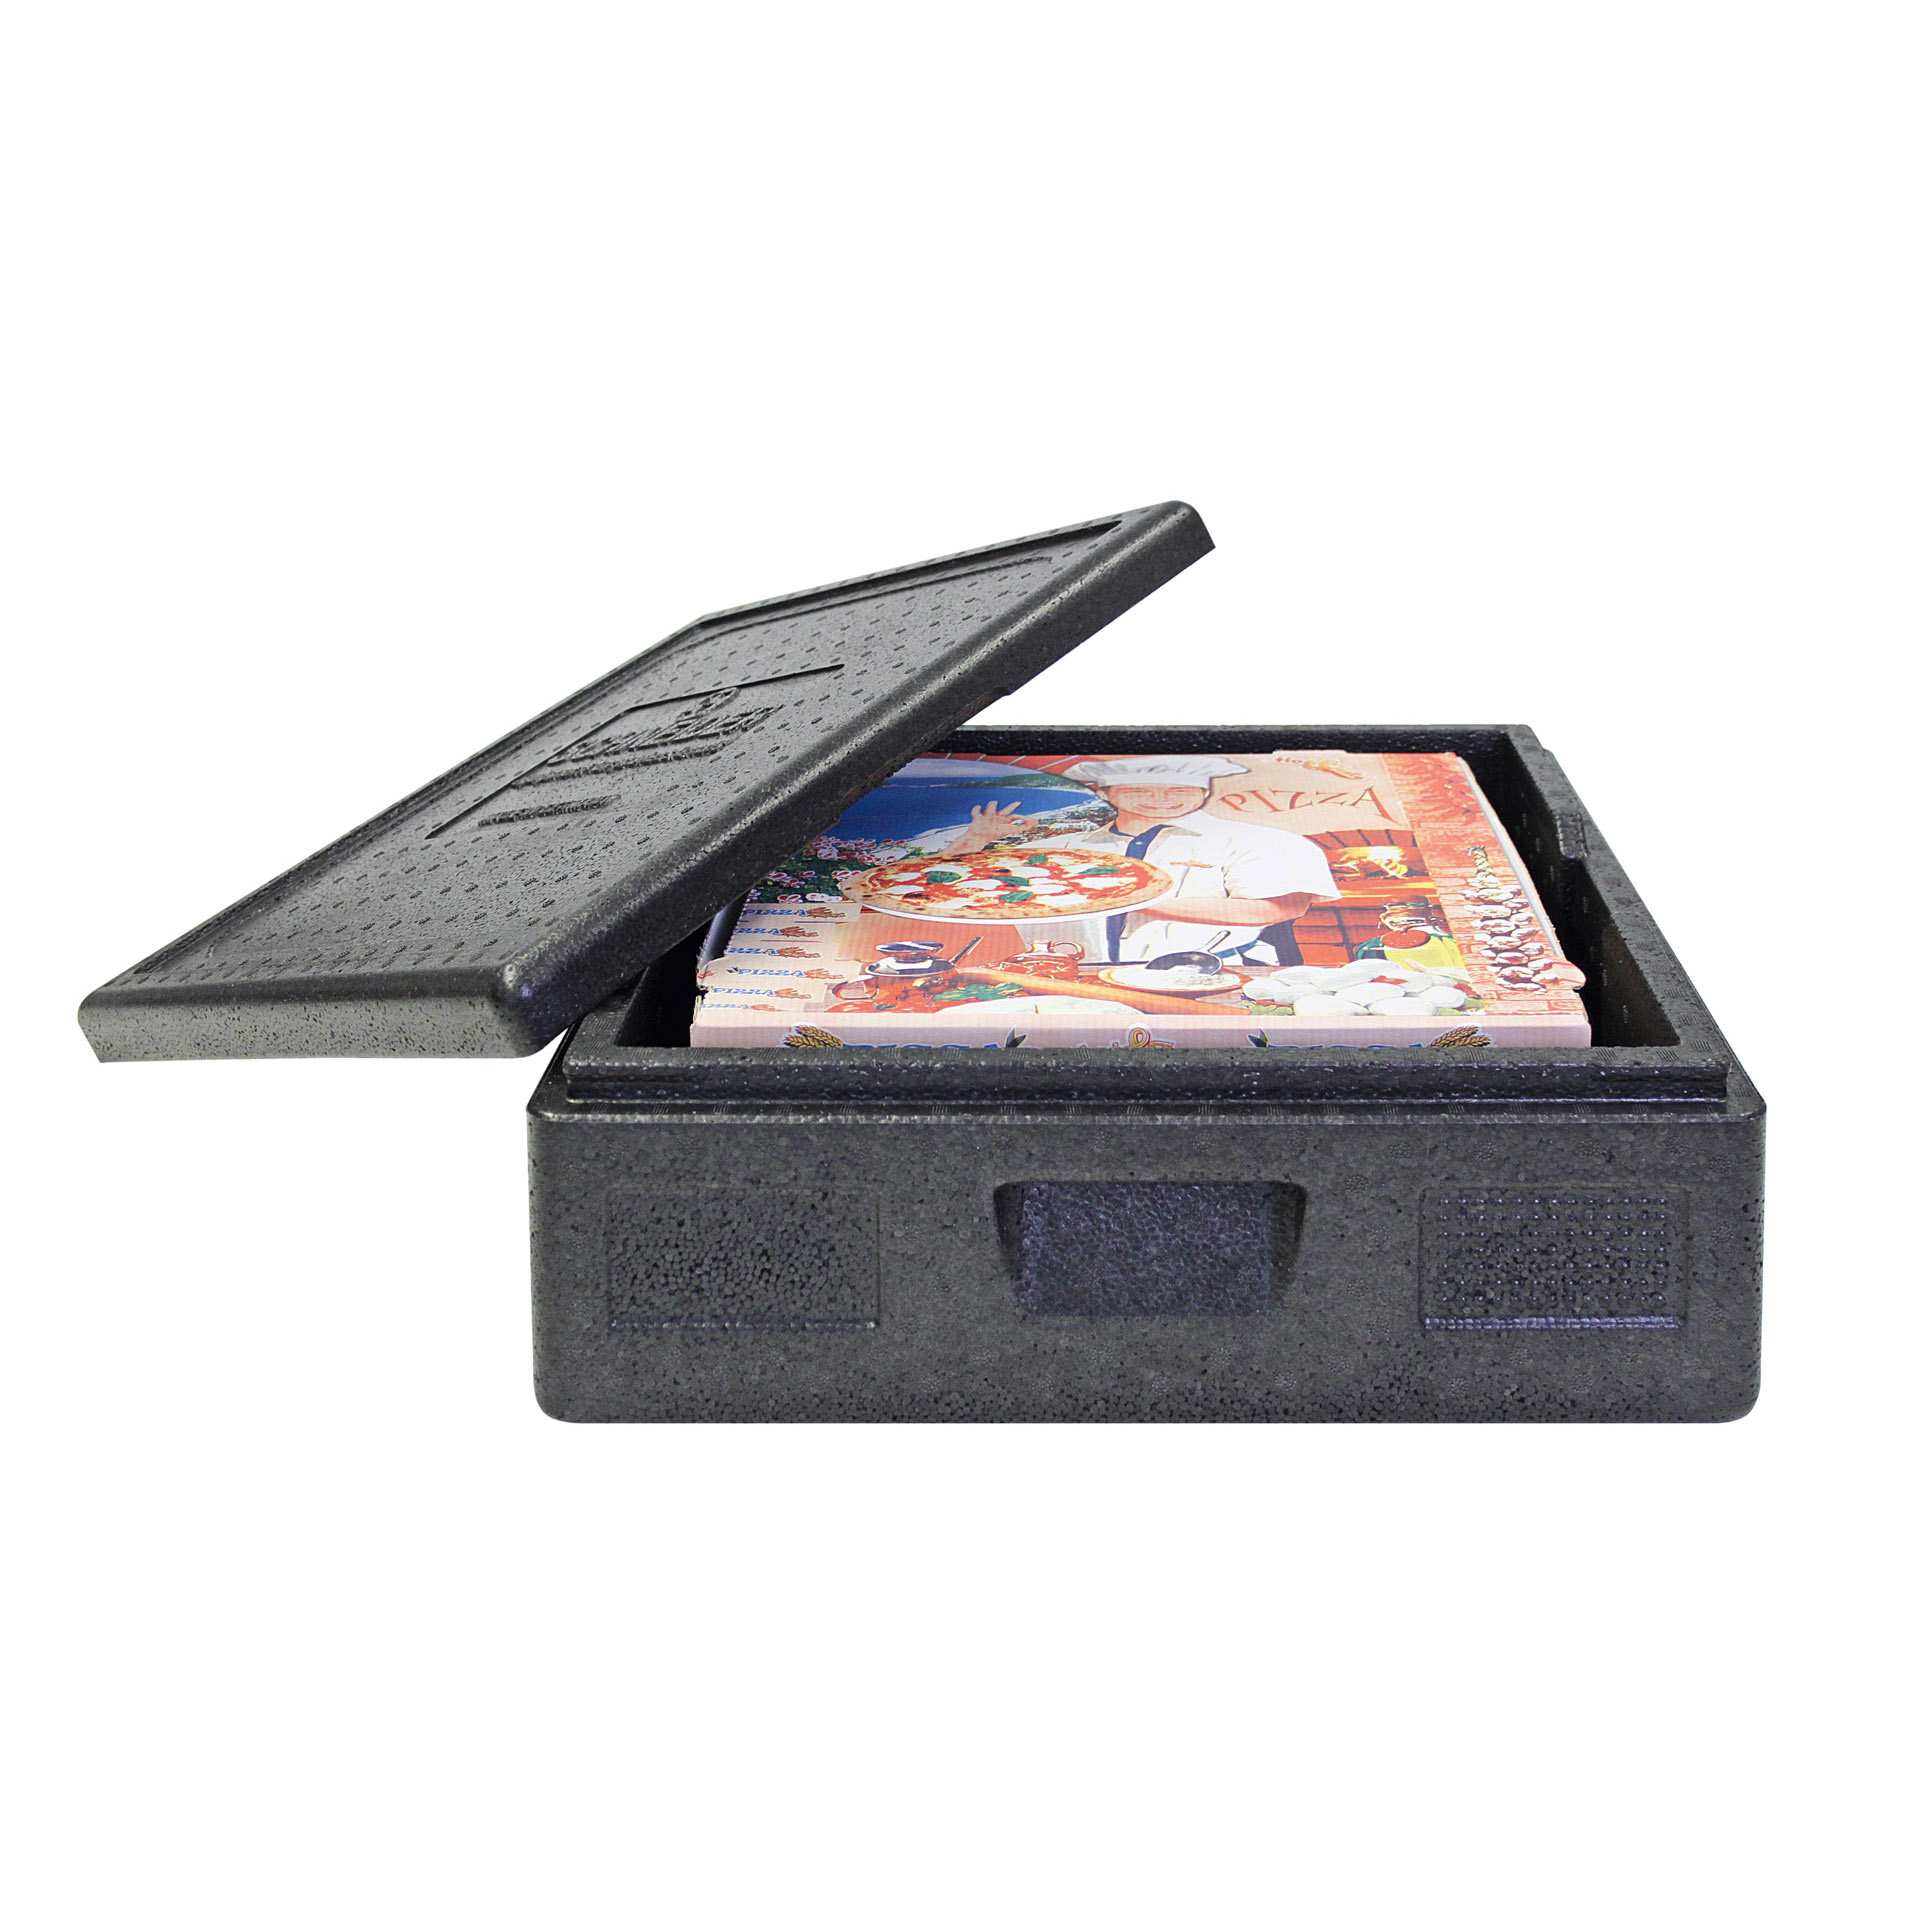 TOP-BOX - Pizza klein - Abm. 41,0 x 41,0 x 16,5 cm - Inhalt 12 l - EPP - 650165-C